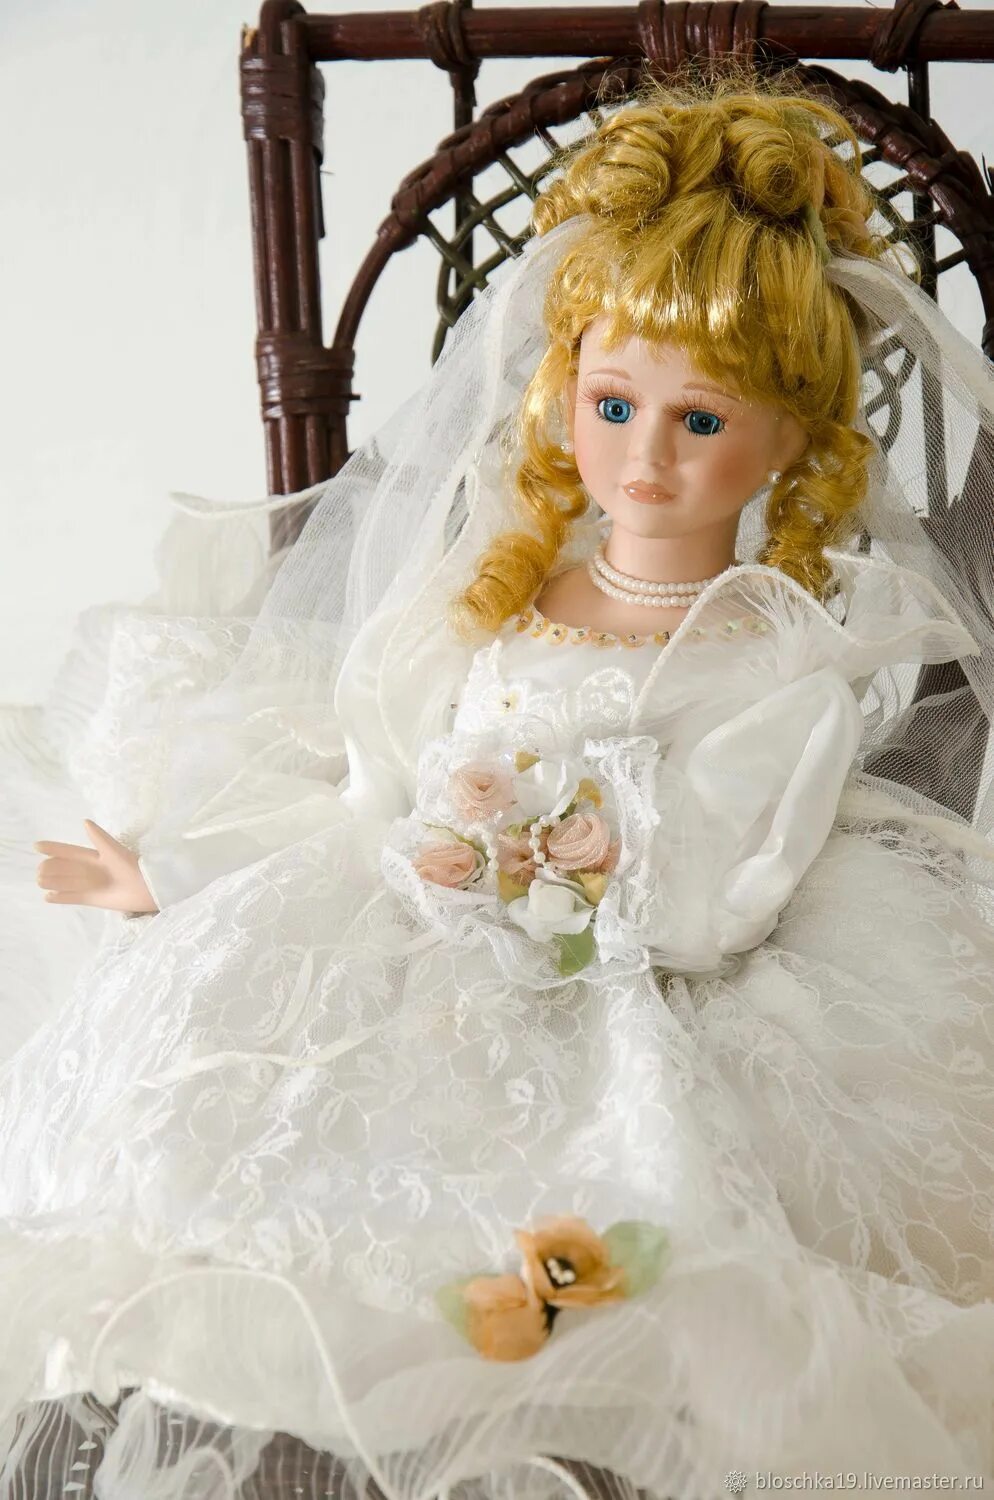 Купить куклу невесту. Кукла невеста. Фарфоровая кукла невеста. Кукла в свадебном платье. Кукла невеста самая красивая.